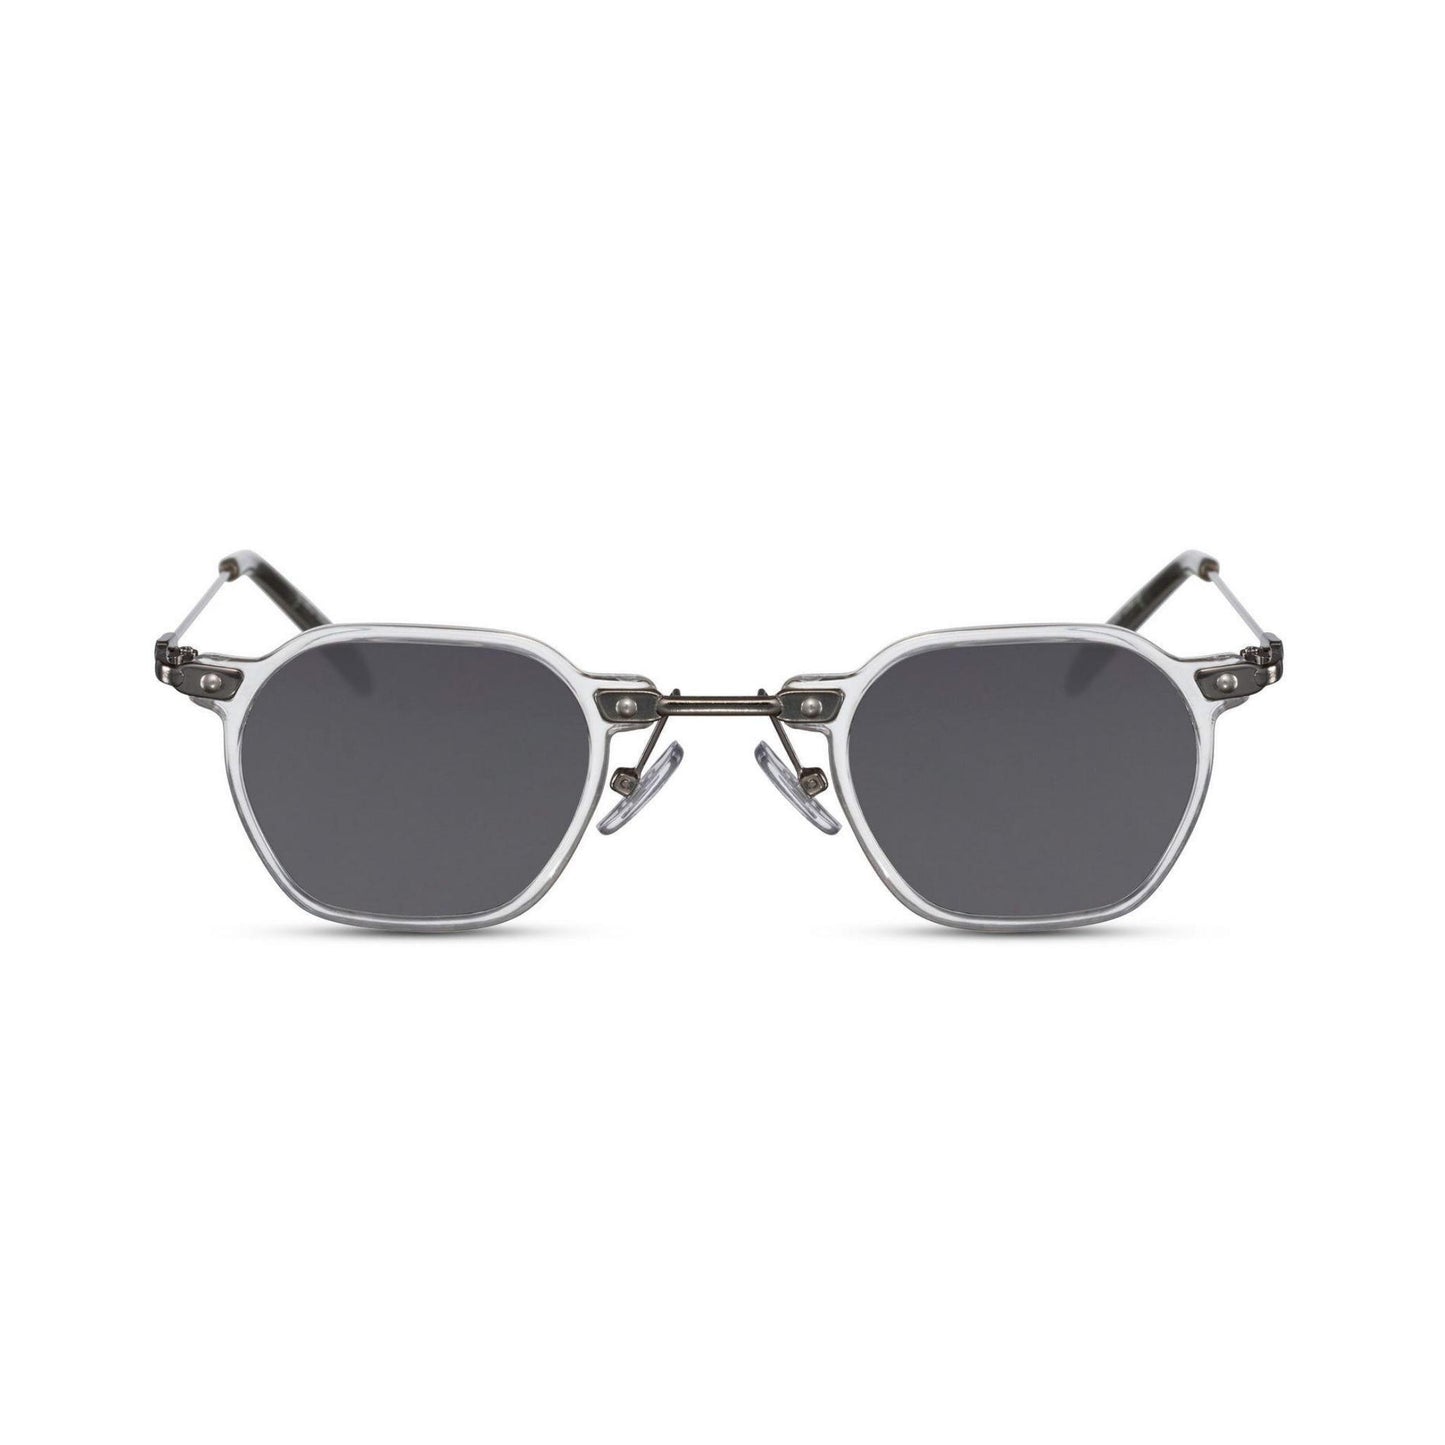 Γυαλιά ηλίου (retro) Mirage της Exposure Sunglasses με προστασία UV400 με λευκό σκελετό και μαύρο φακό.